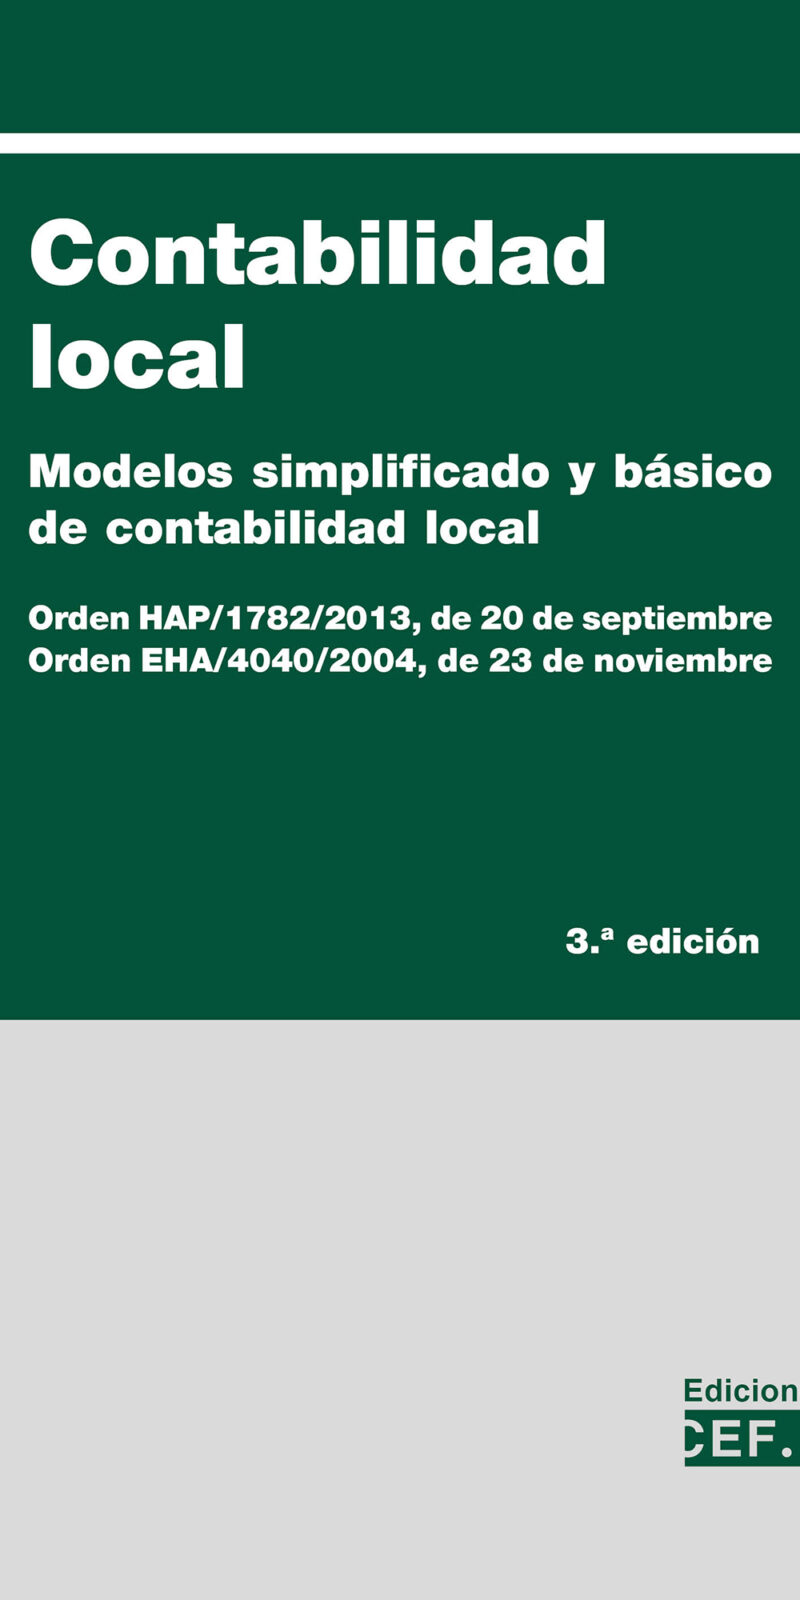 I. MODELO SIMPLIFICADO DE CONTABILIDAD LOCAL Índice Orden HAP/1782/2013, de 20 de septiembre, por la que se aprueba la Instrucción del modelo simplificado de contabilidad local y se modifica la Instrucción del modelo básico de contabilidad local,aprobada por Orden EHA/4040/2004, de 23 de noviembre II. MODELO BÁSICO DE CONTABILIDAD LOCAL Índice Orden EHA/4040/2004, de 23 de noviembre, por la que se aprueba la Instrucción del Modelo Básico de Contabilidad Local III. ÍNDICE ALFABÉTICO DE SUBGRUPOS, CUENTAS Y SUBCUENTAS